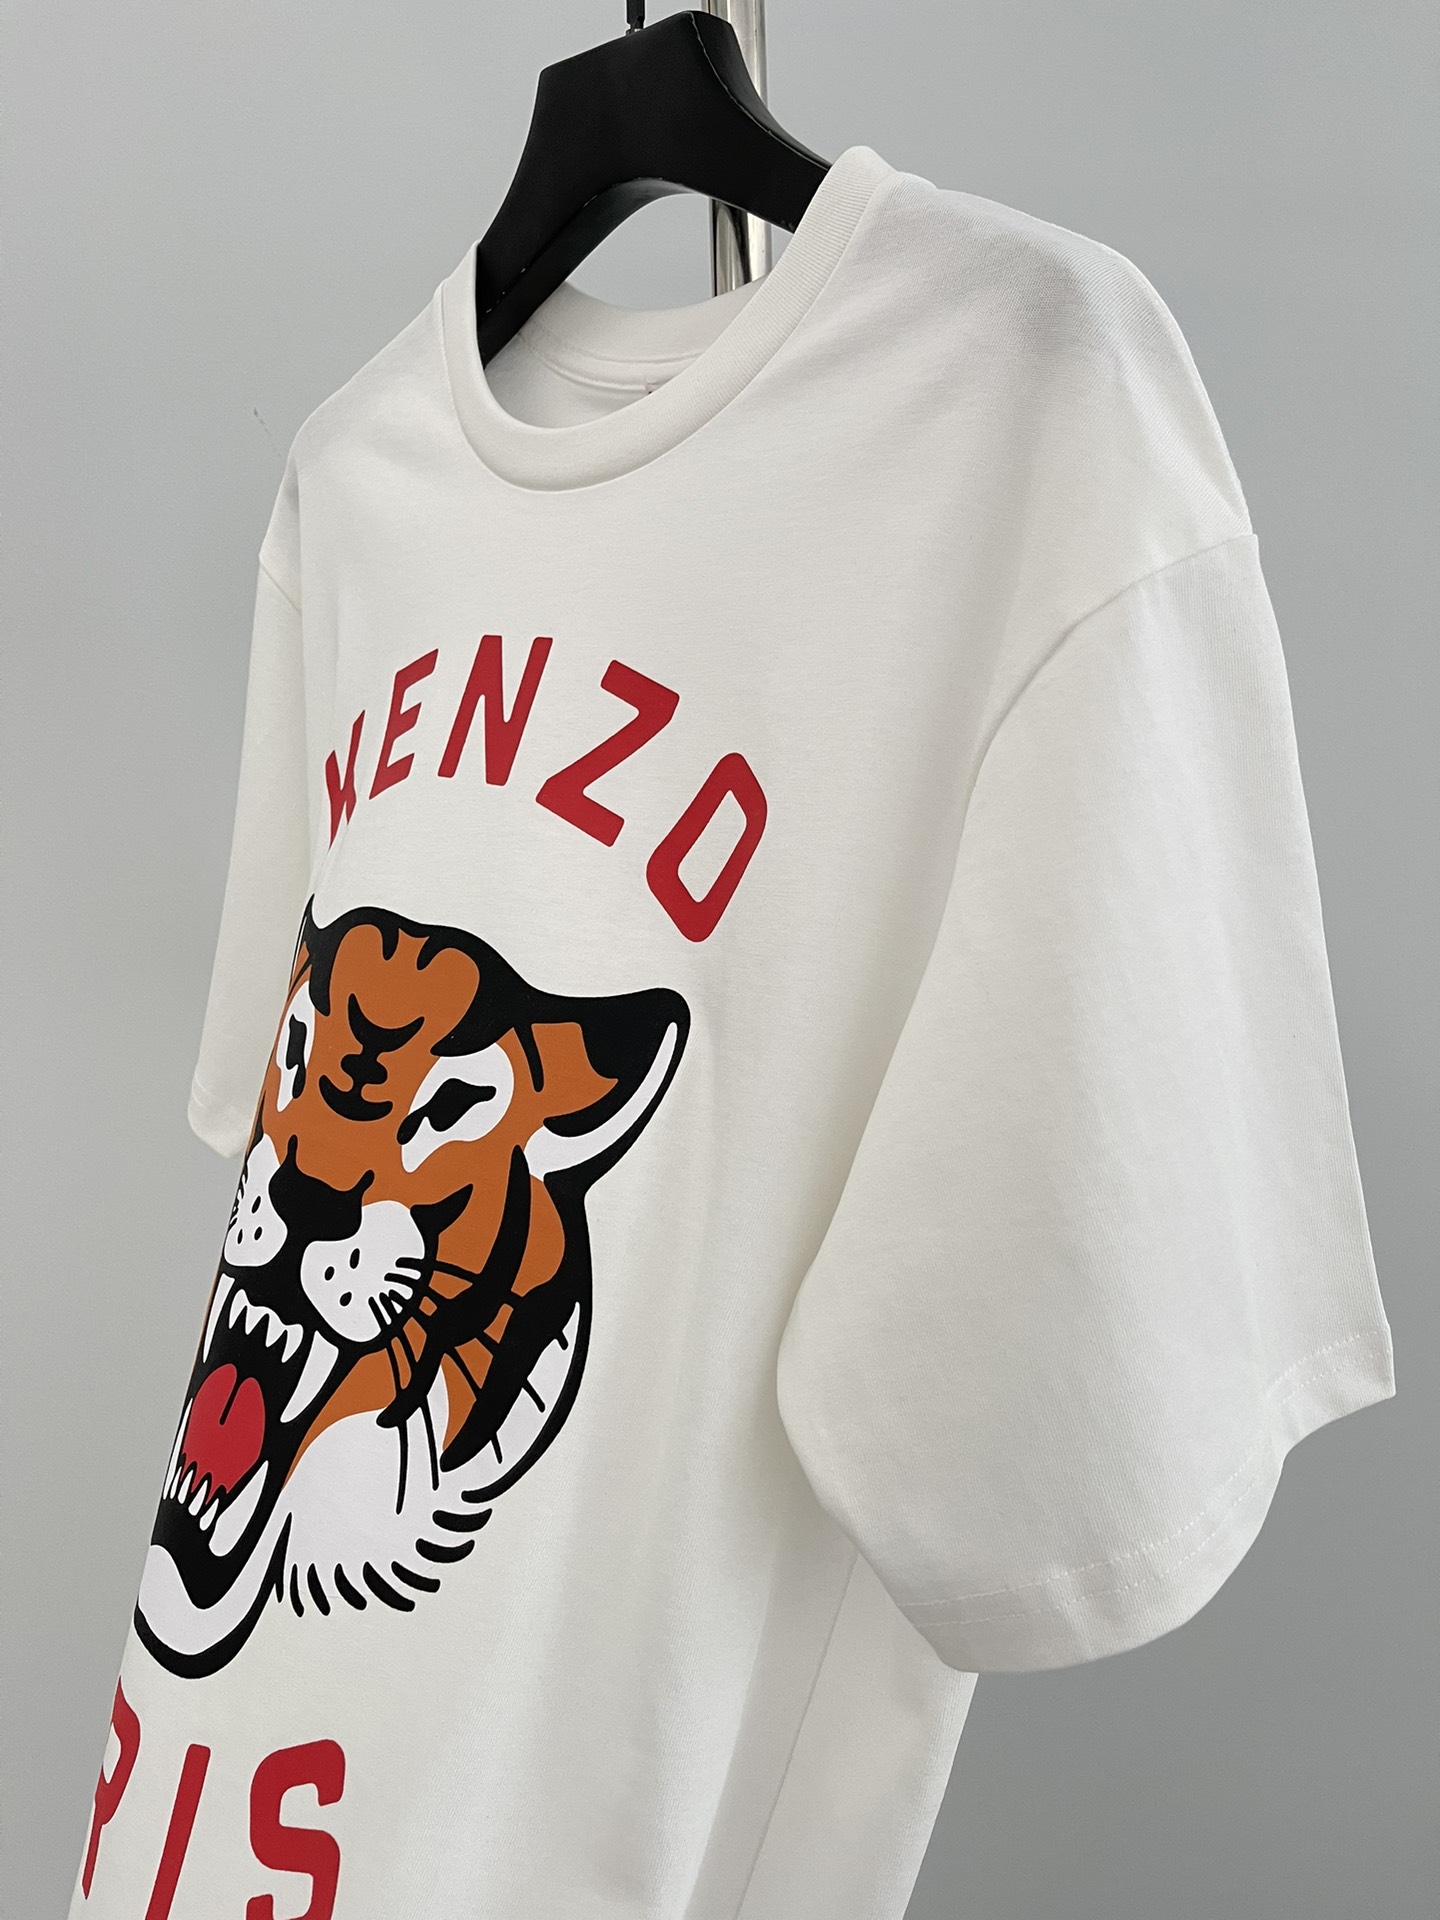 这件t恤的印花是今年的新标识“kenzo lucky tiger”图案设计，nigo设计的“lucky tiger与kenzo takada设计的大象在一起，也是本品牌的吉祥虎头标志。